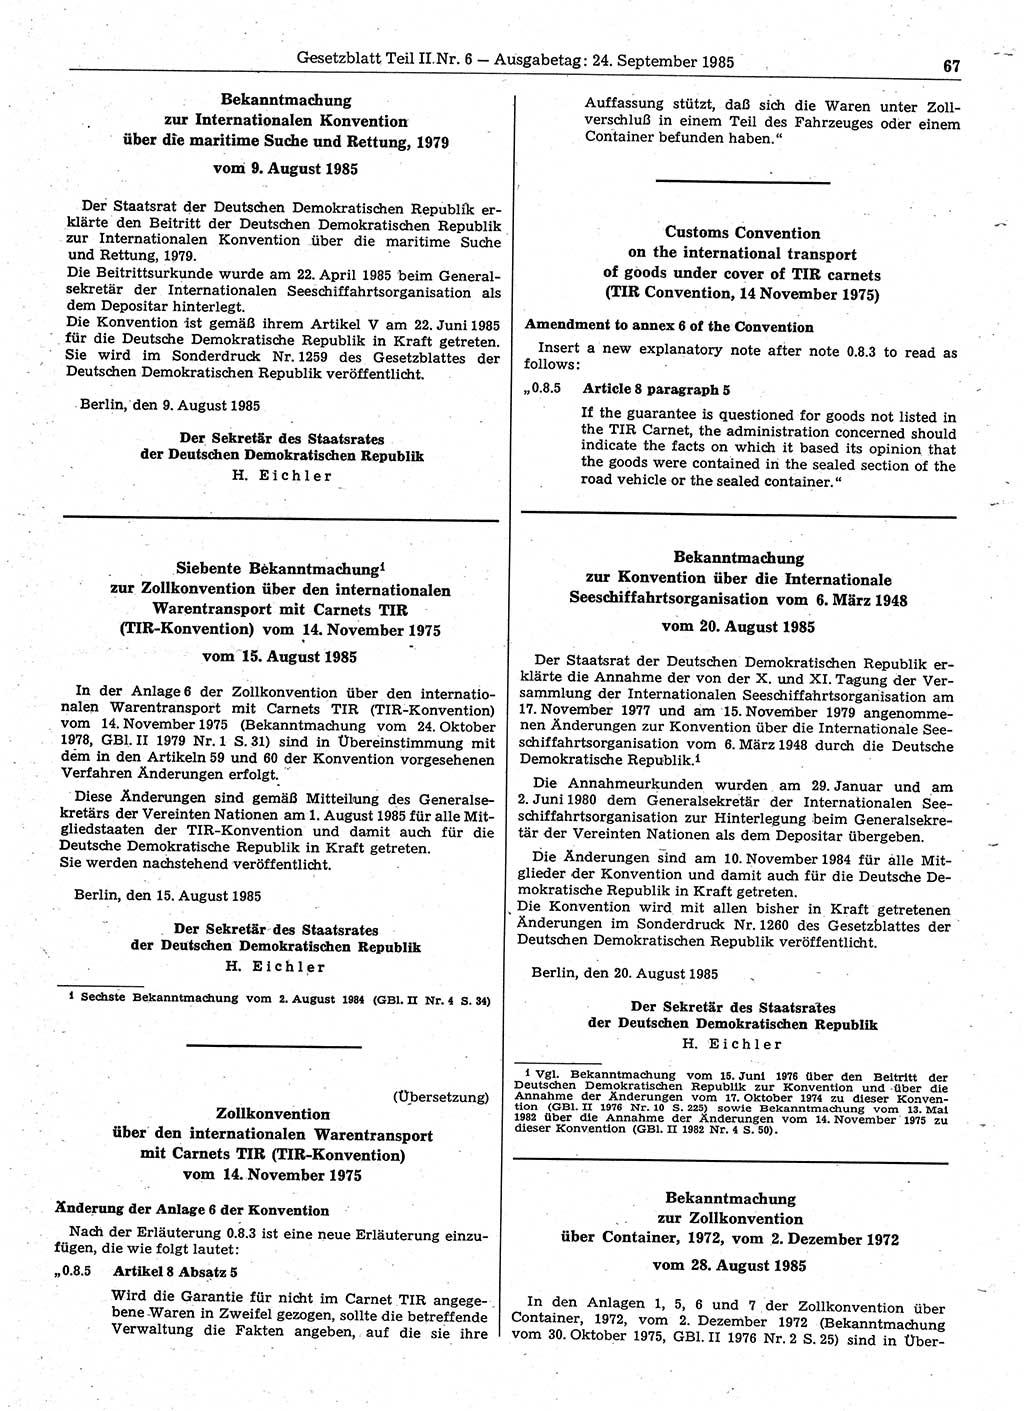 Gesetzblatt (GBl.) der Deutschen Demokratischen Republik (DDR) Teil ⅠⅠ 1985, Seite 67 (GBl. DDR ⅠⅠ 1985, S. 67)